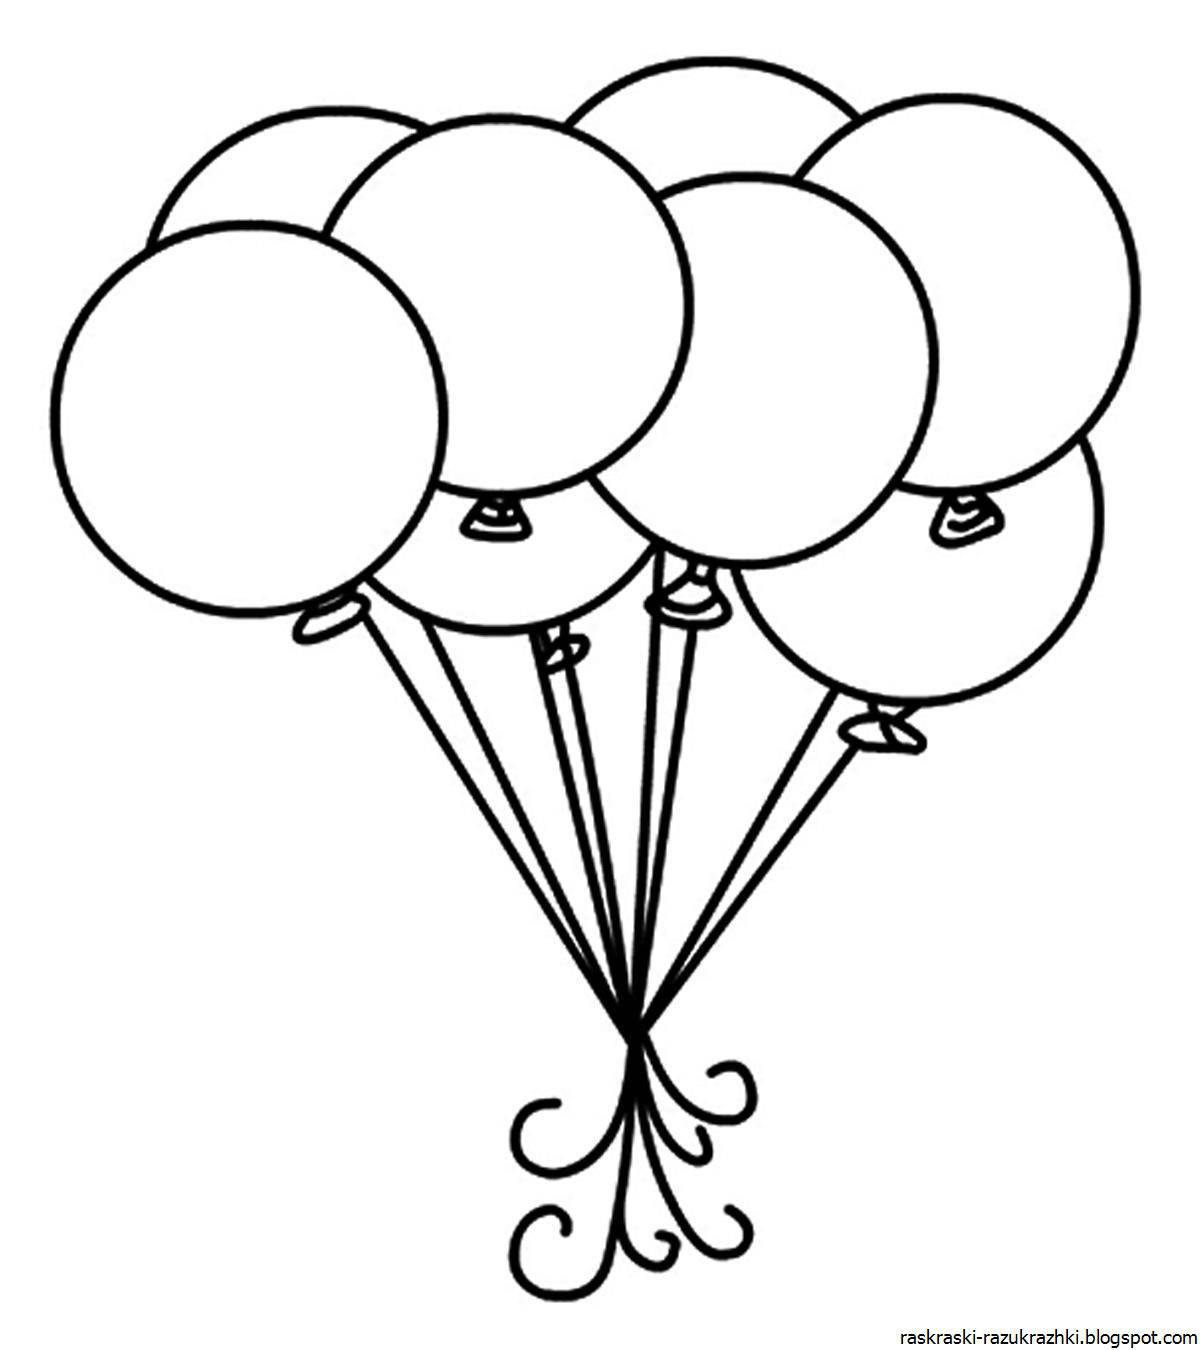 Радостные воздушные шары раскраски для детей